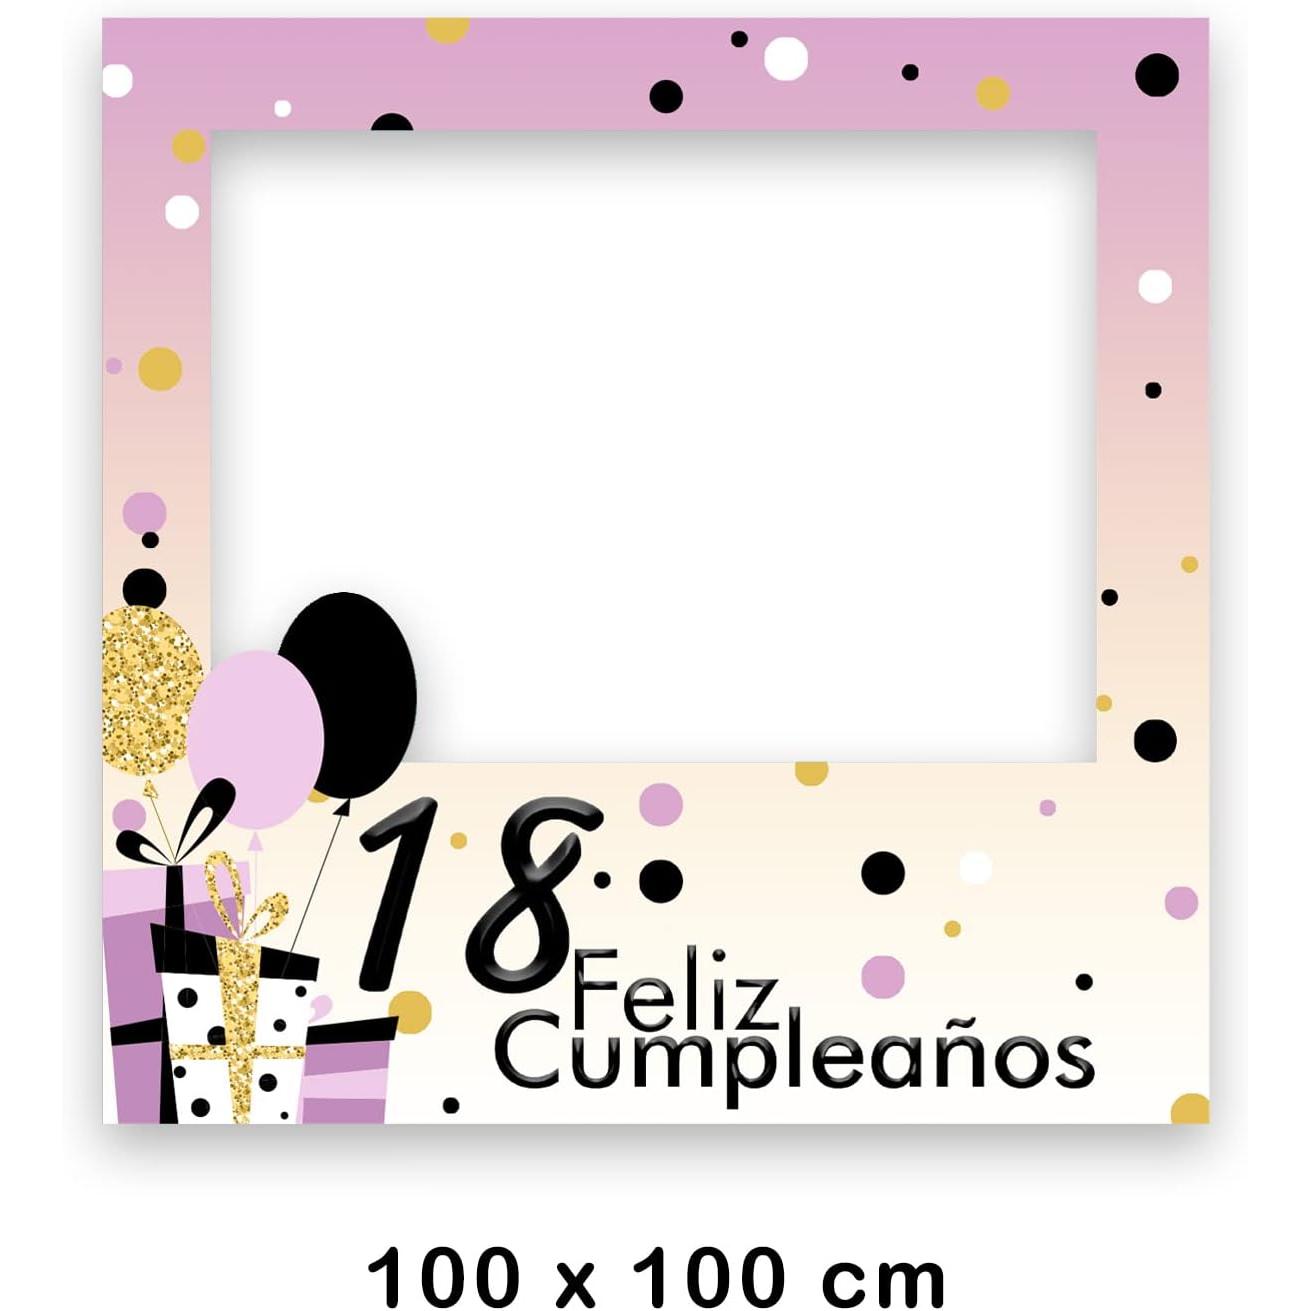 Photocall Feliz 40 Cumpleaños, 80 x 80 cm, Regalos para Cumpleaños, Photocall Económico y Original, Ideas para Regalos